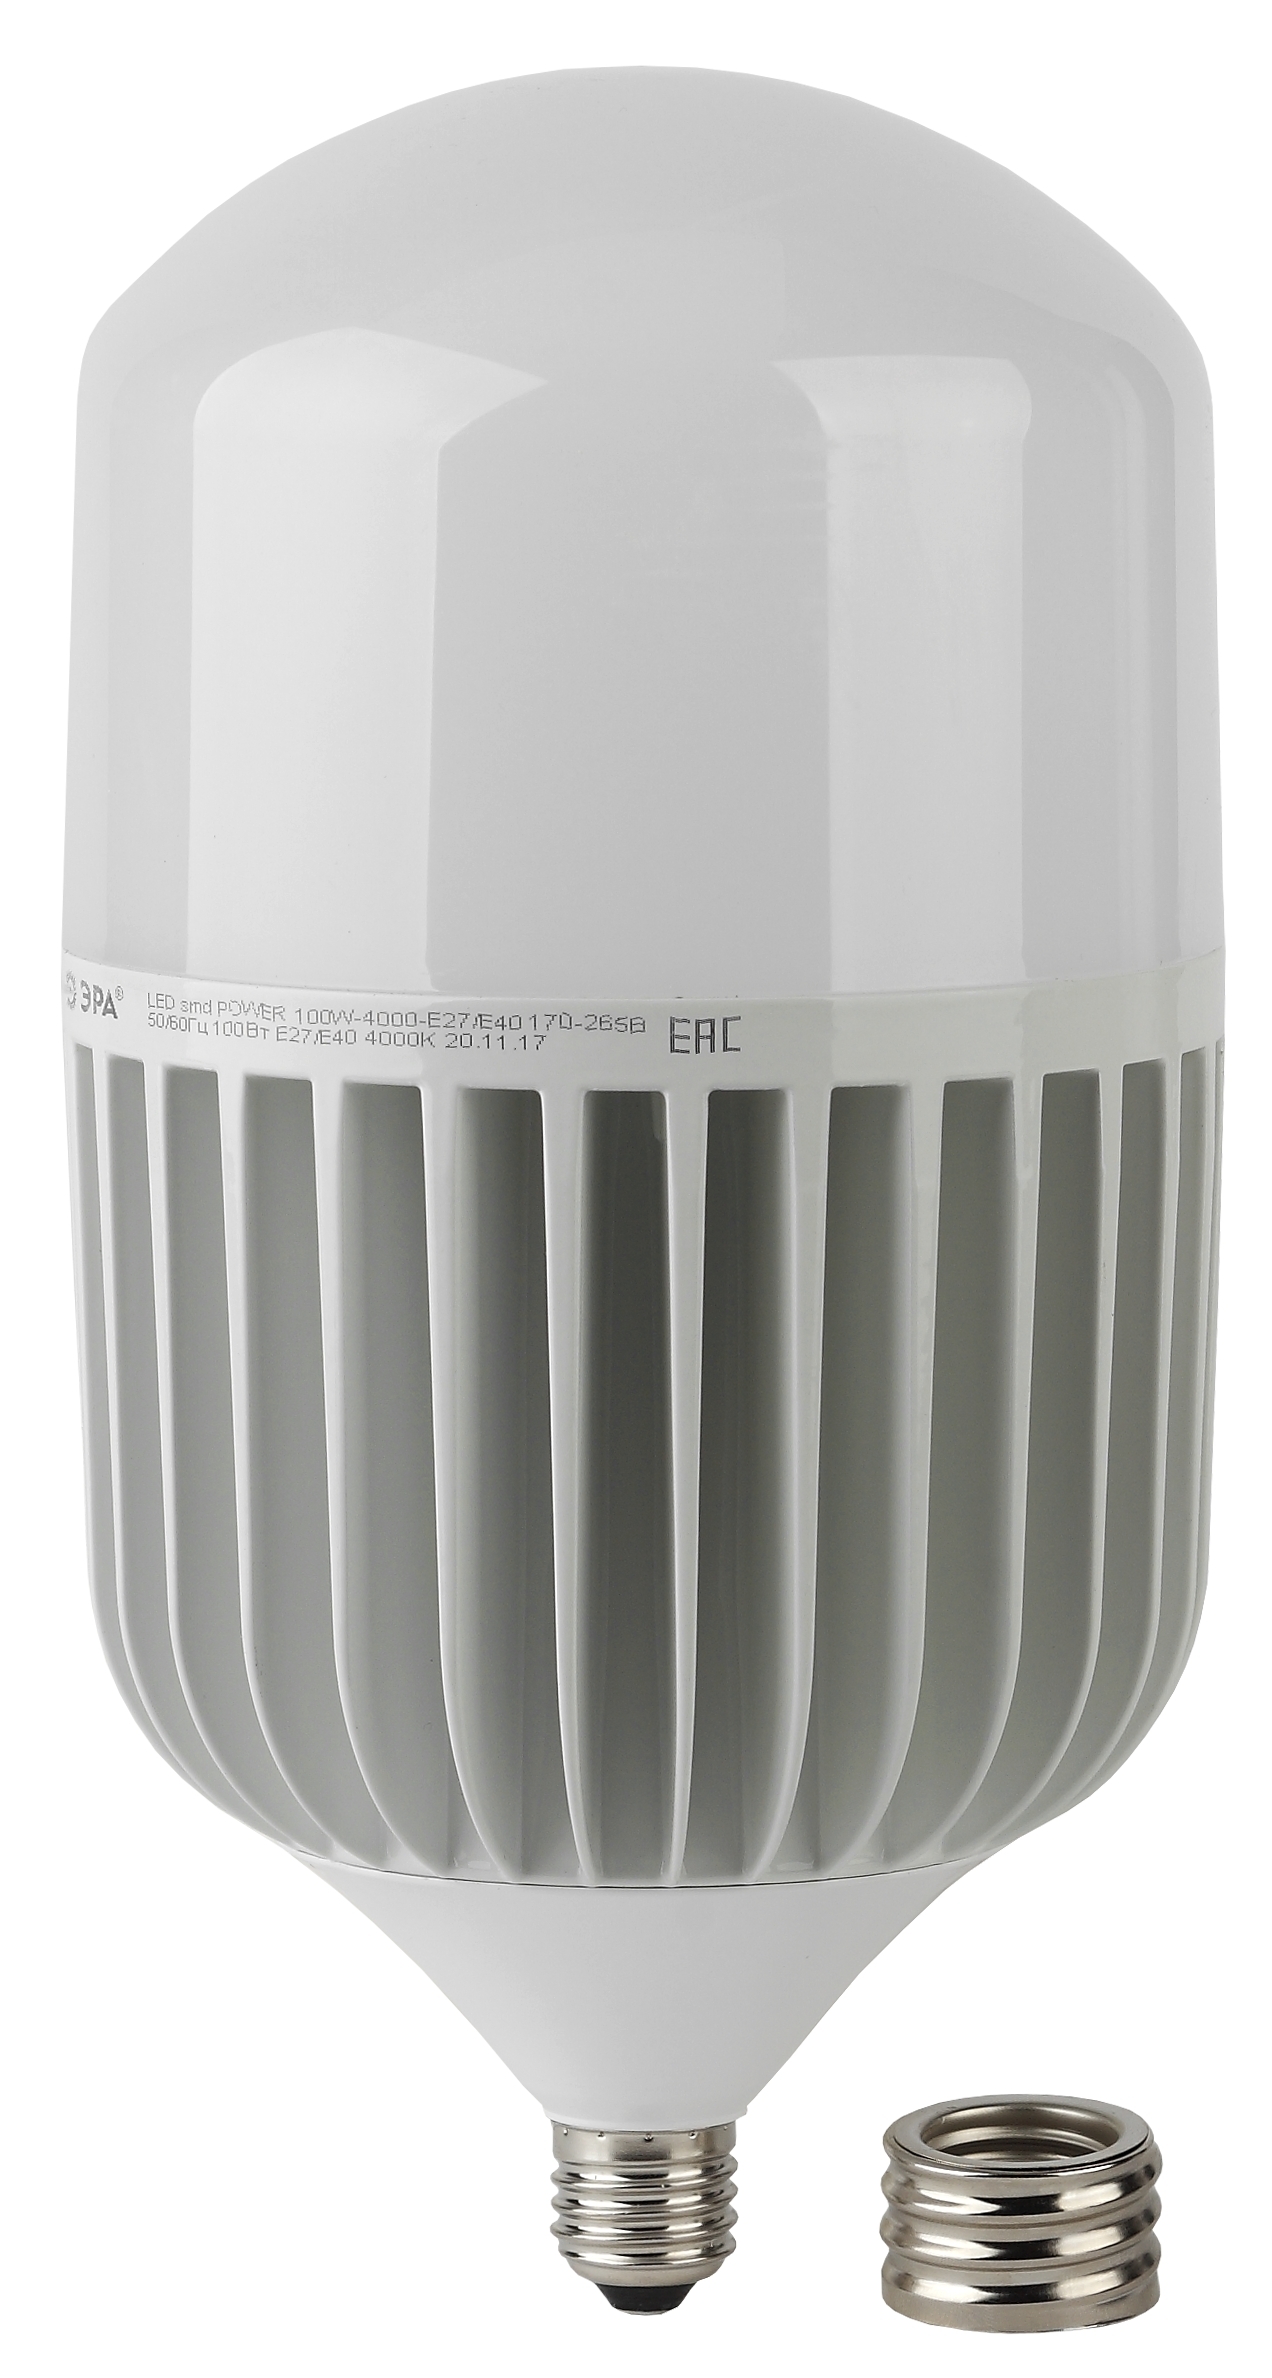  светодиодная ЭРА STD LED POWER T160-100W-6500-E27/E40 Е27 / Е40 .